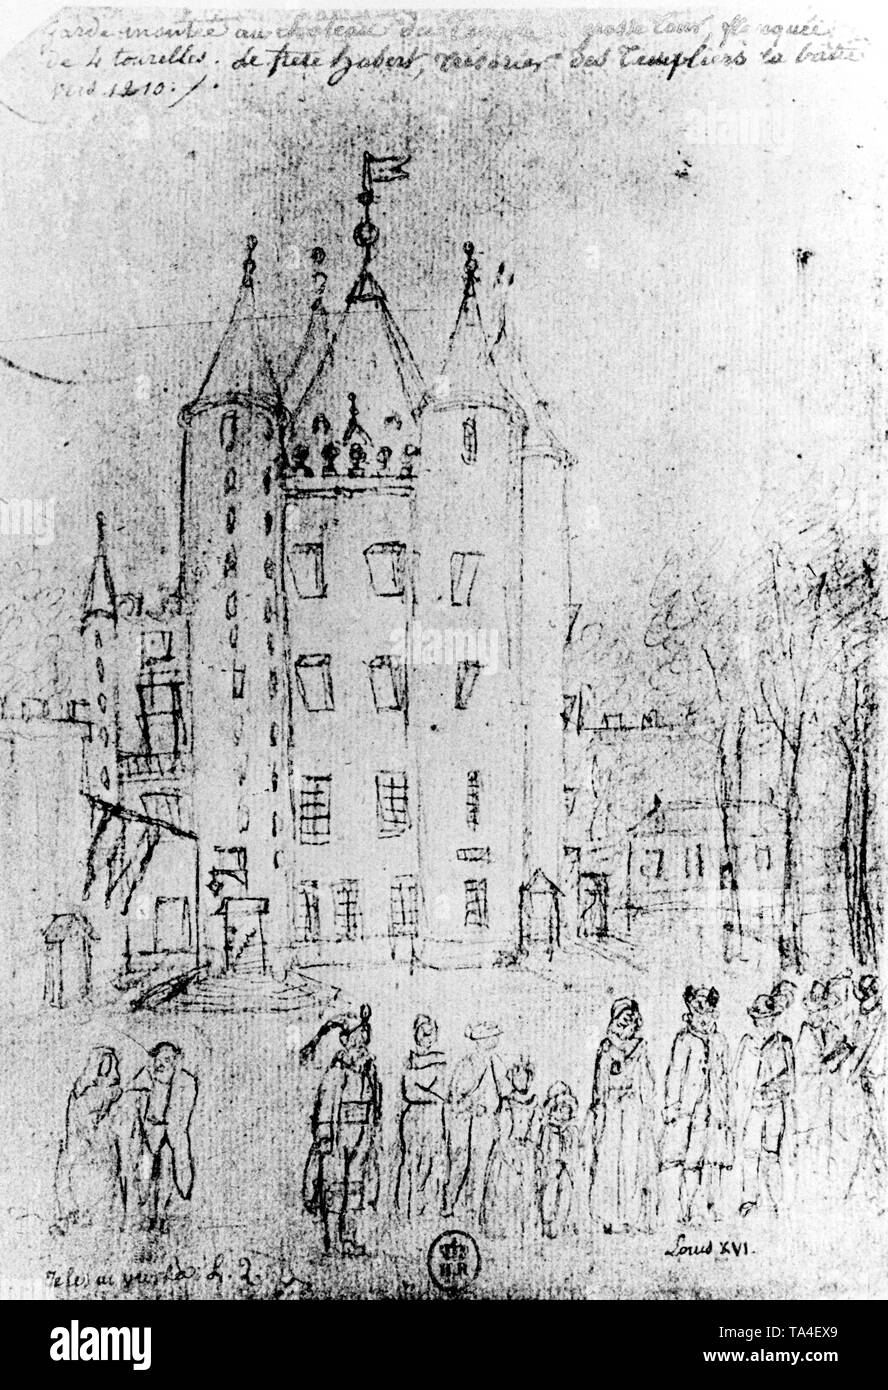 Skizze der Turm genannt "Tempel", Teil des 12. Jahrhunderts Templer Kloster, wird das Gefängnis von König Ludwig XVI. und seiner Familie in der Zeit der Französischen Revolution. Stockfoto